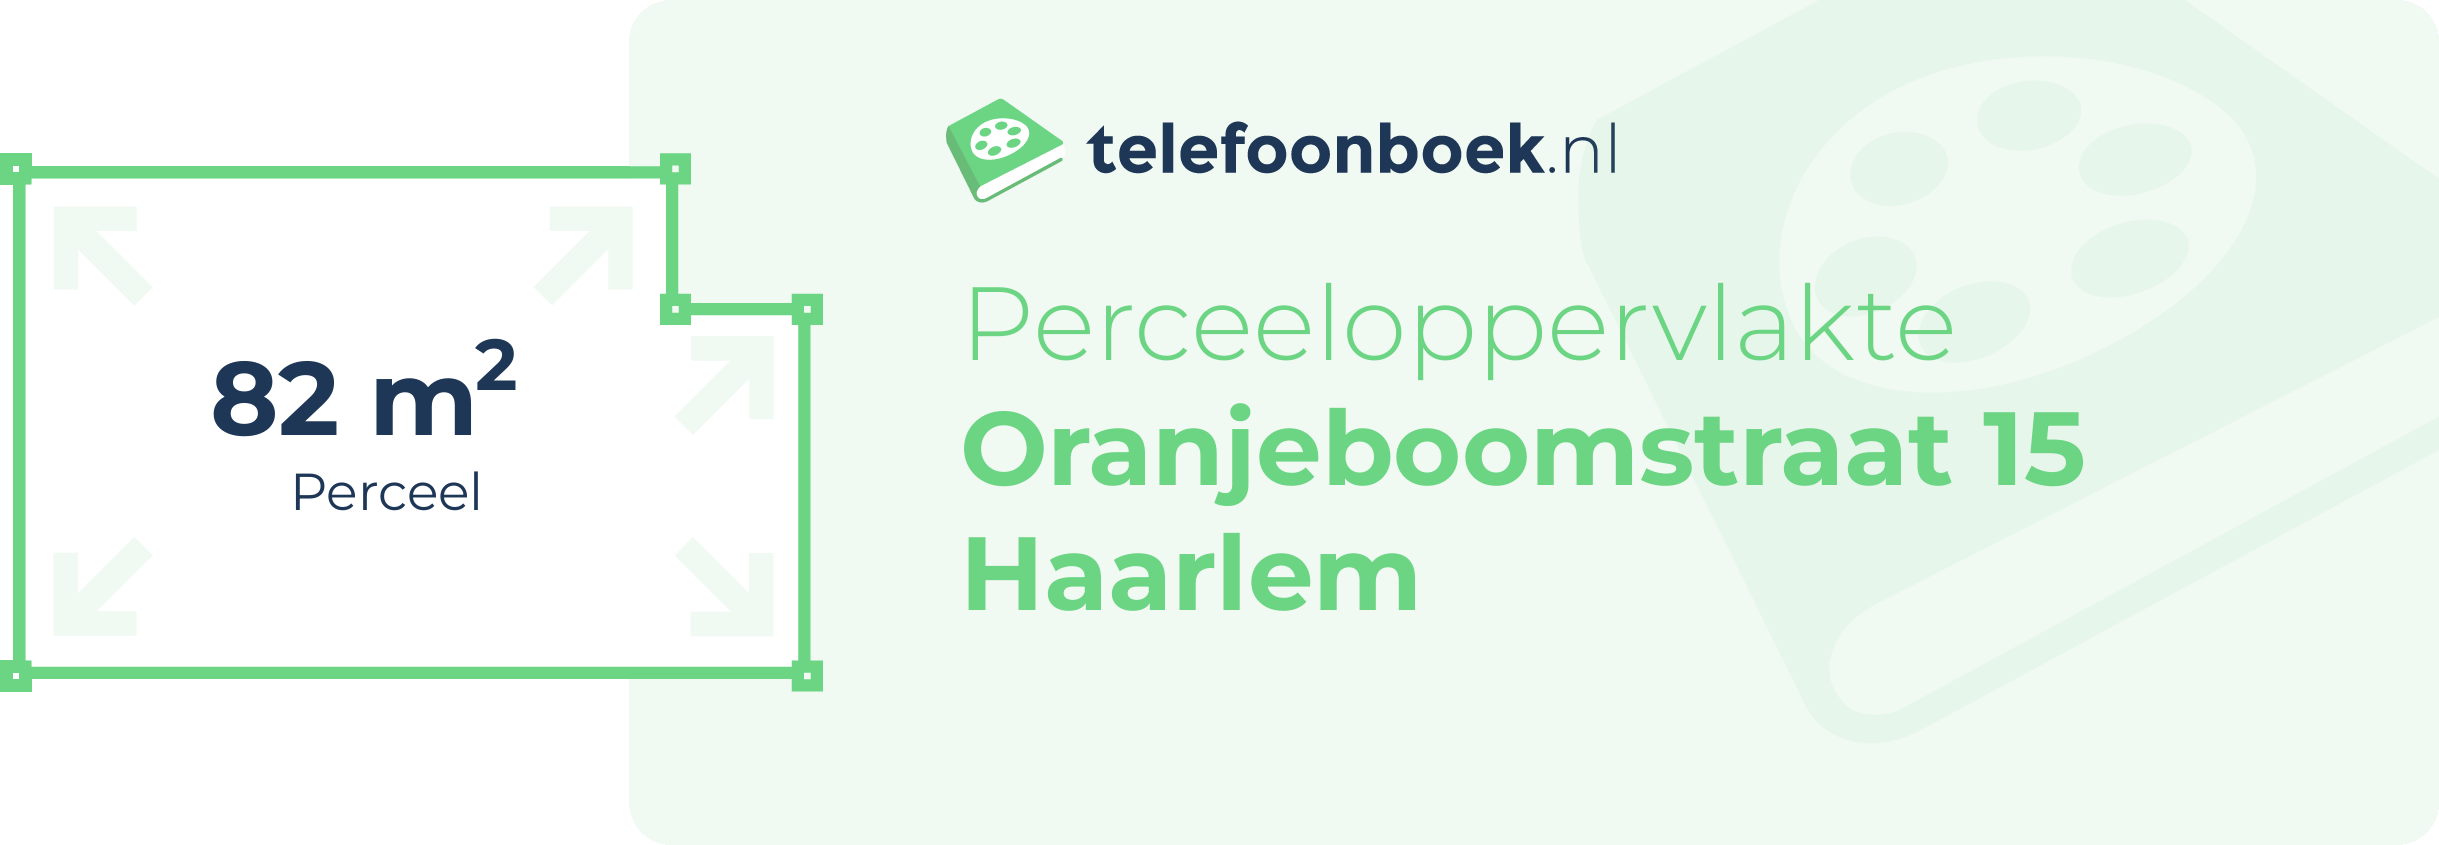 Perceeloppervlakte Oranjeboomstraat 15 Haarlem